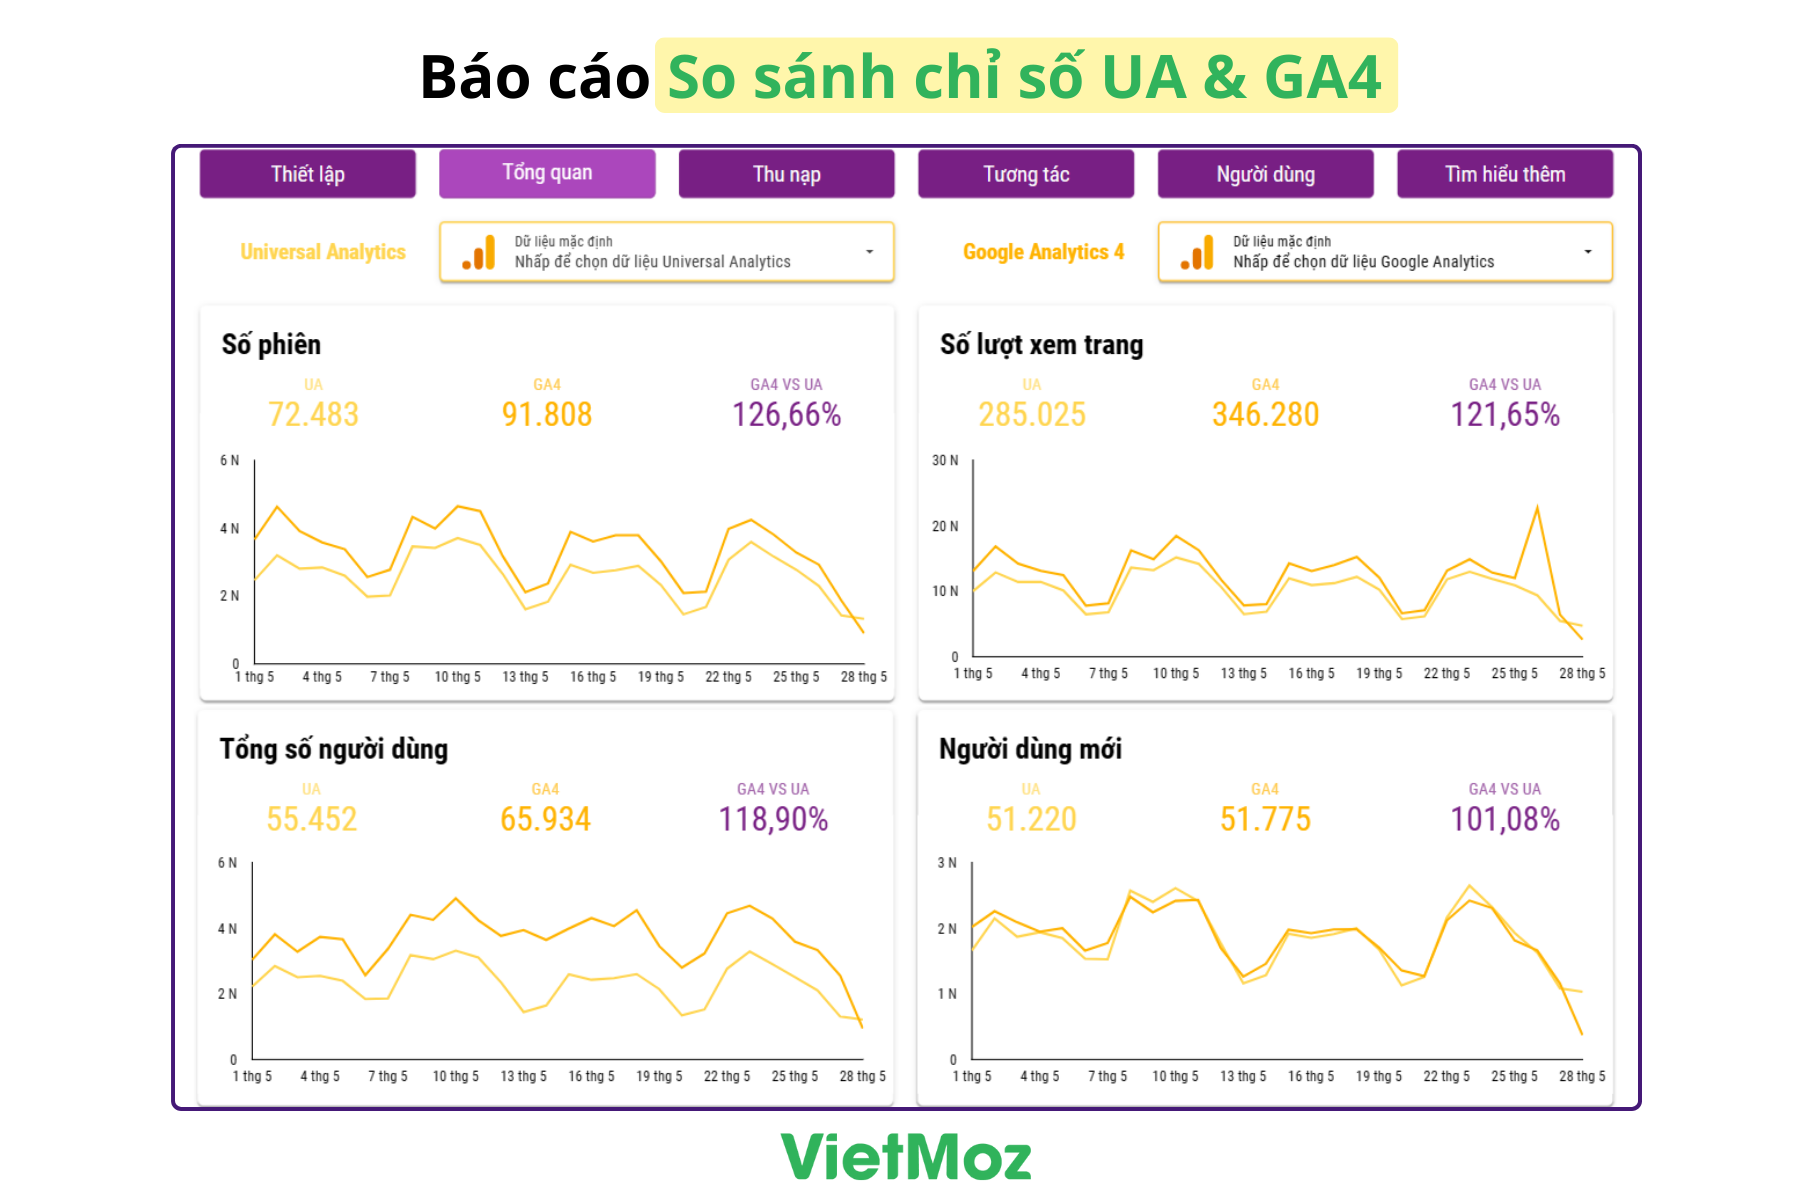 UA to GA4 Migration by VietMoz - Công cụ so sánh chỉ số UA và GA4